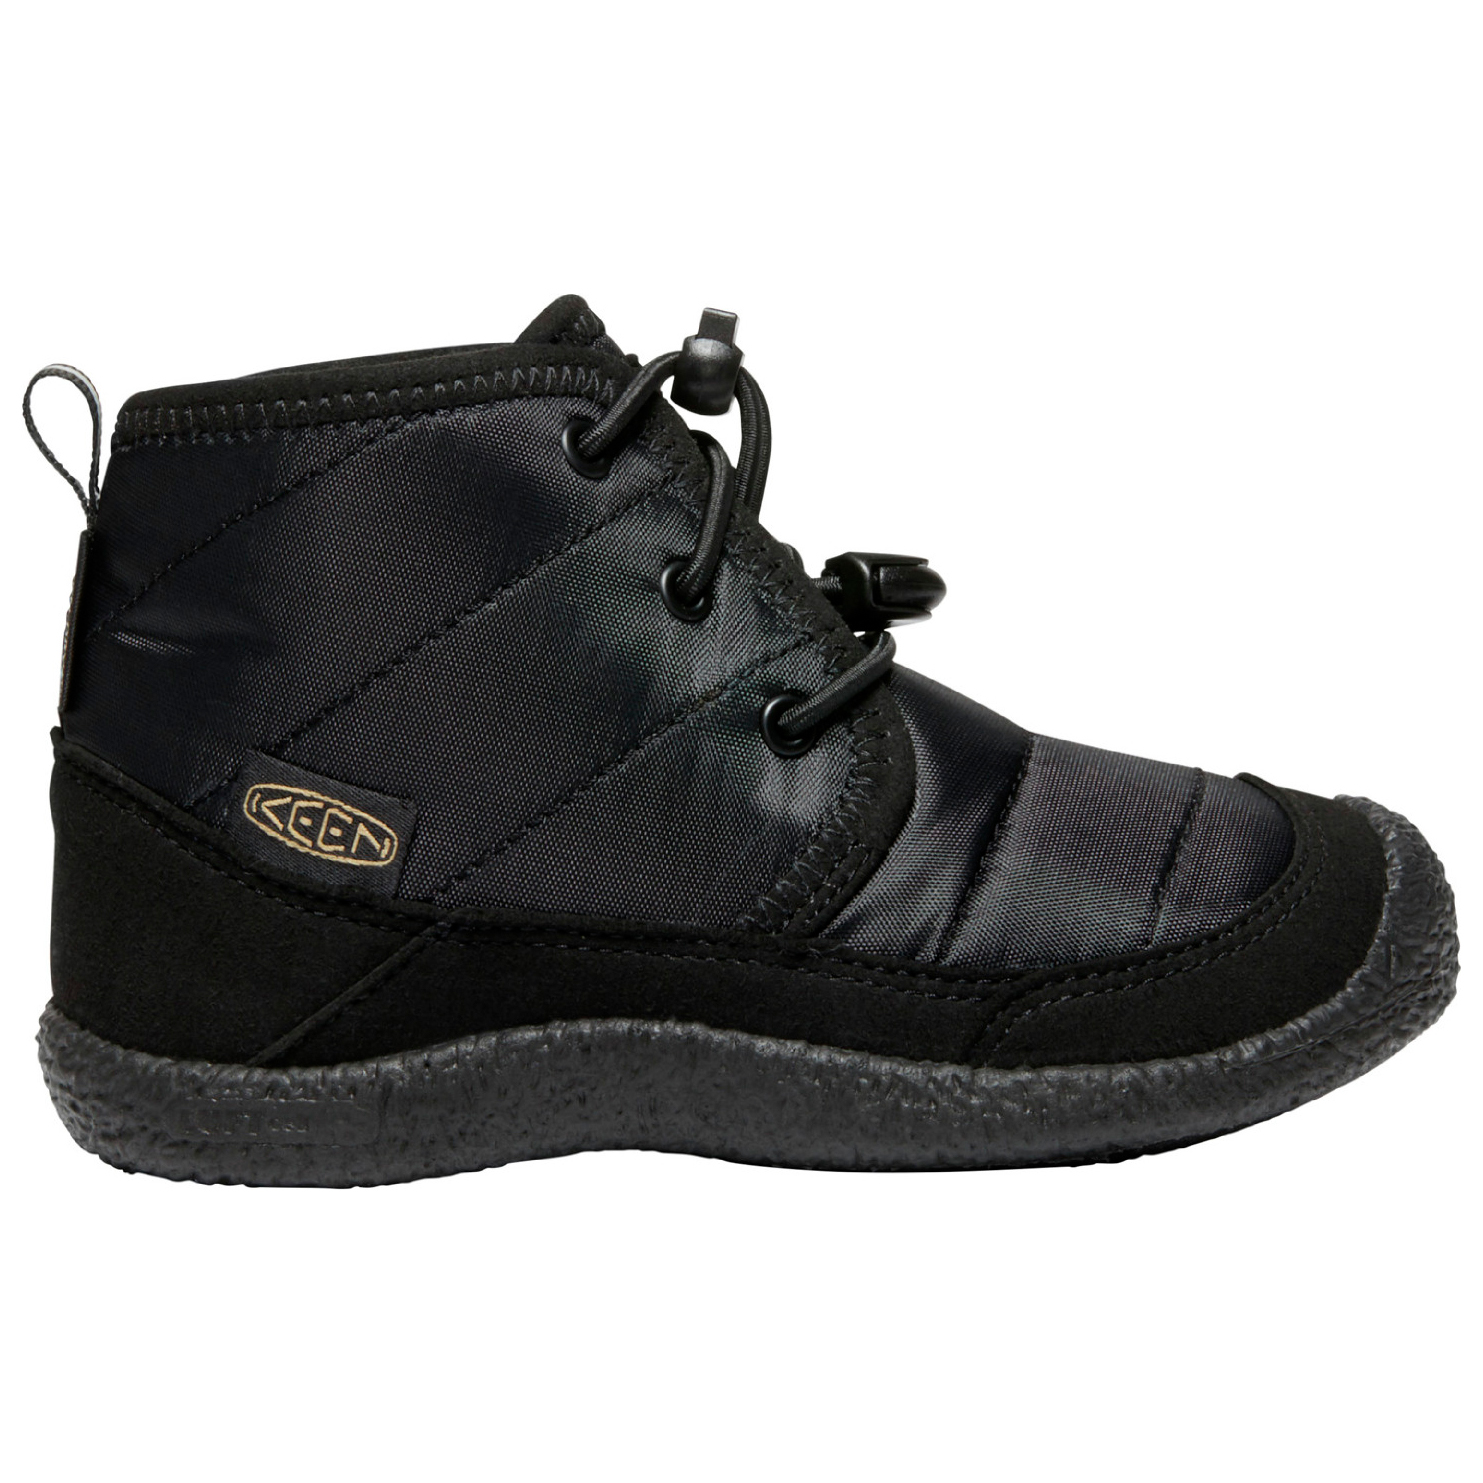 Зимние ботинки Keen Kid's Howser II Chukka WP, цвет Black/Black туфли jasper ii wp keen черный